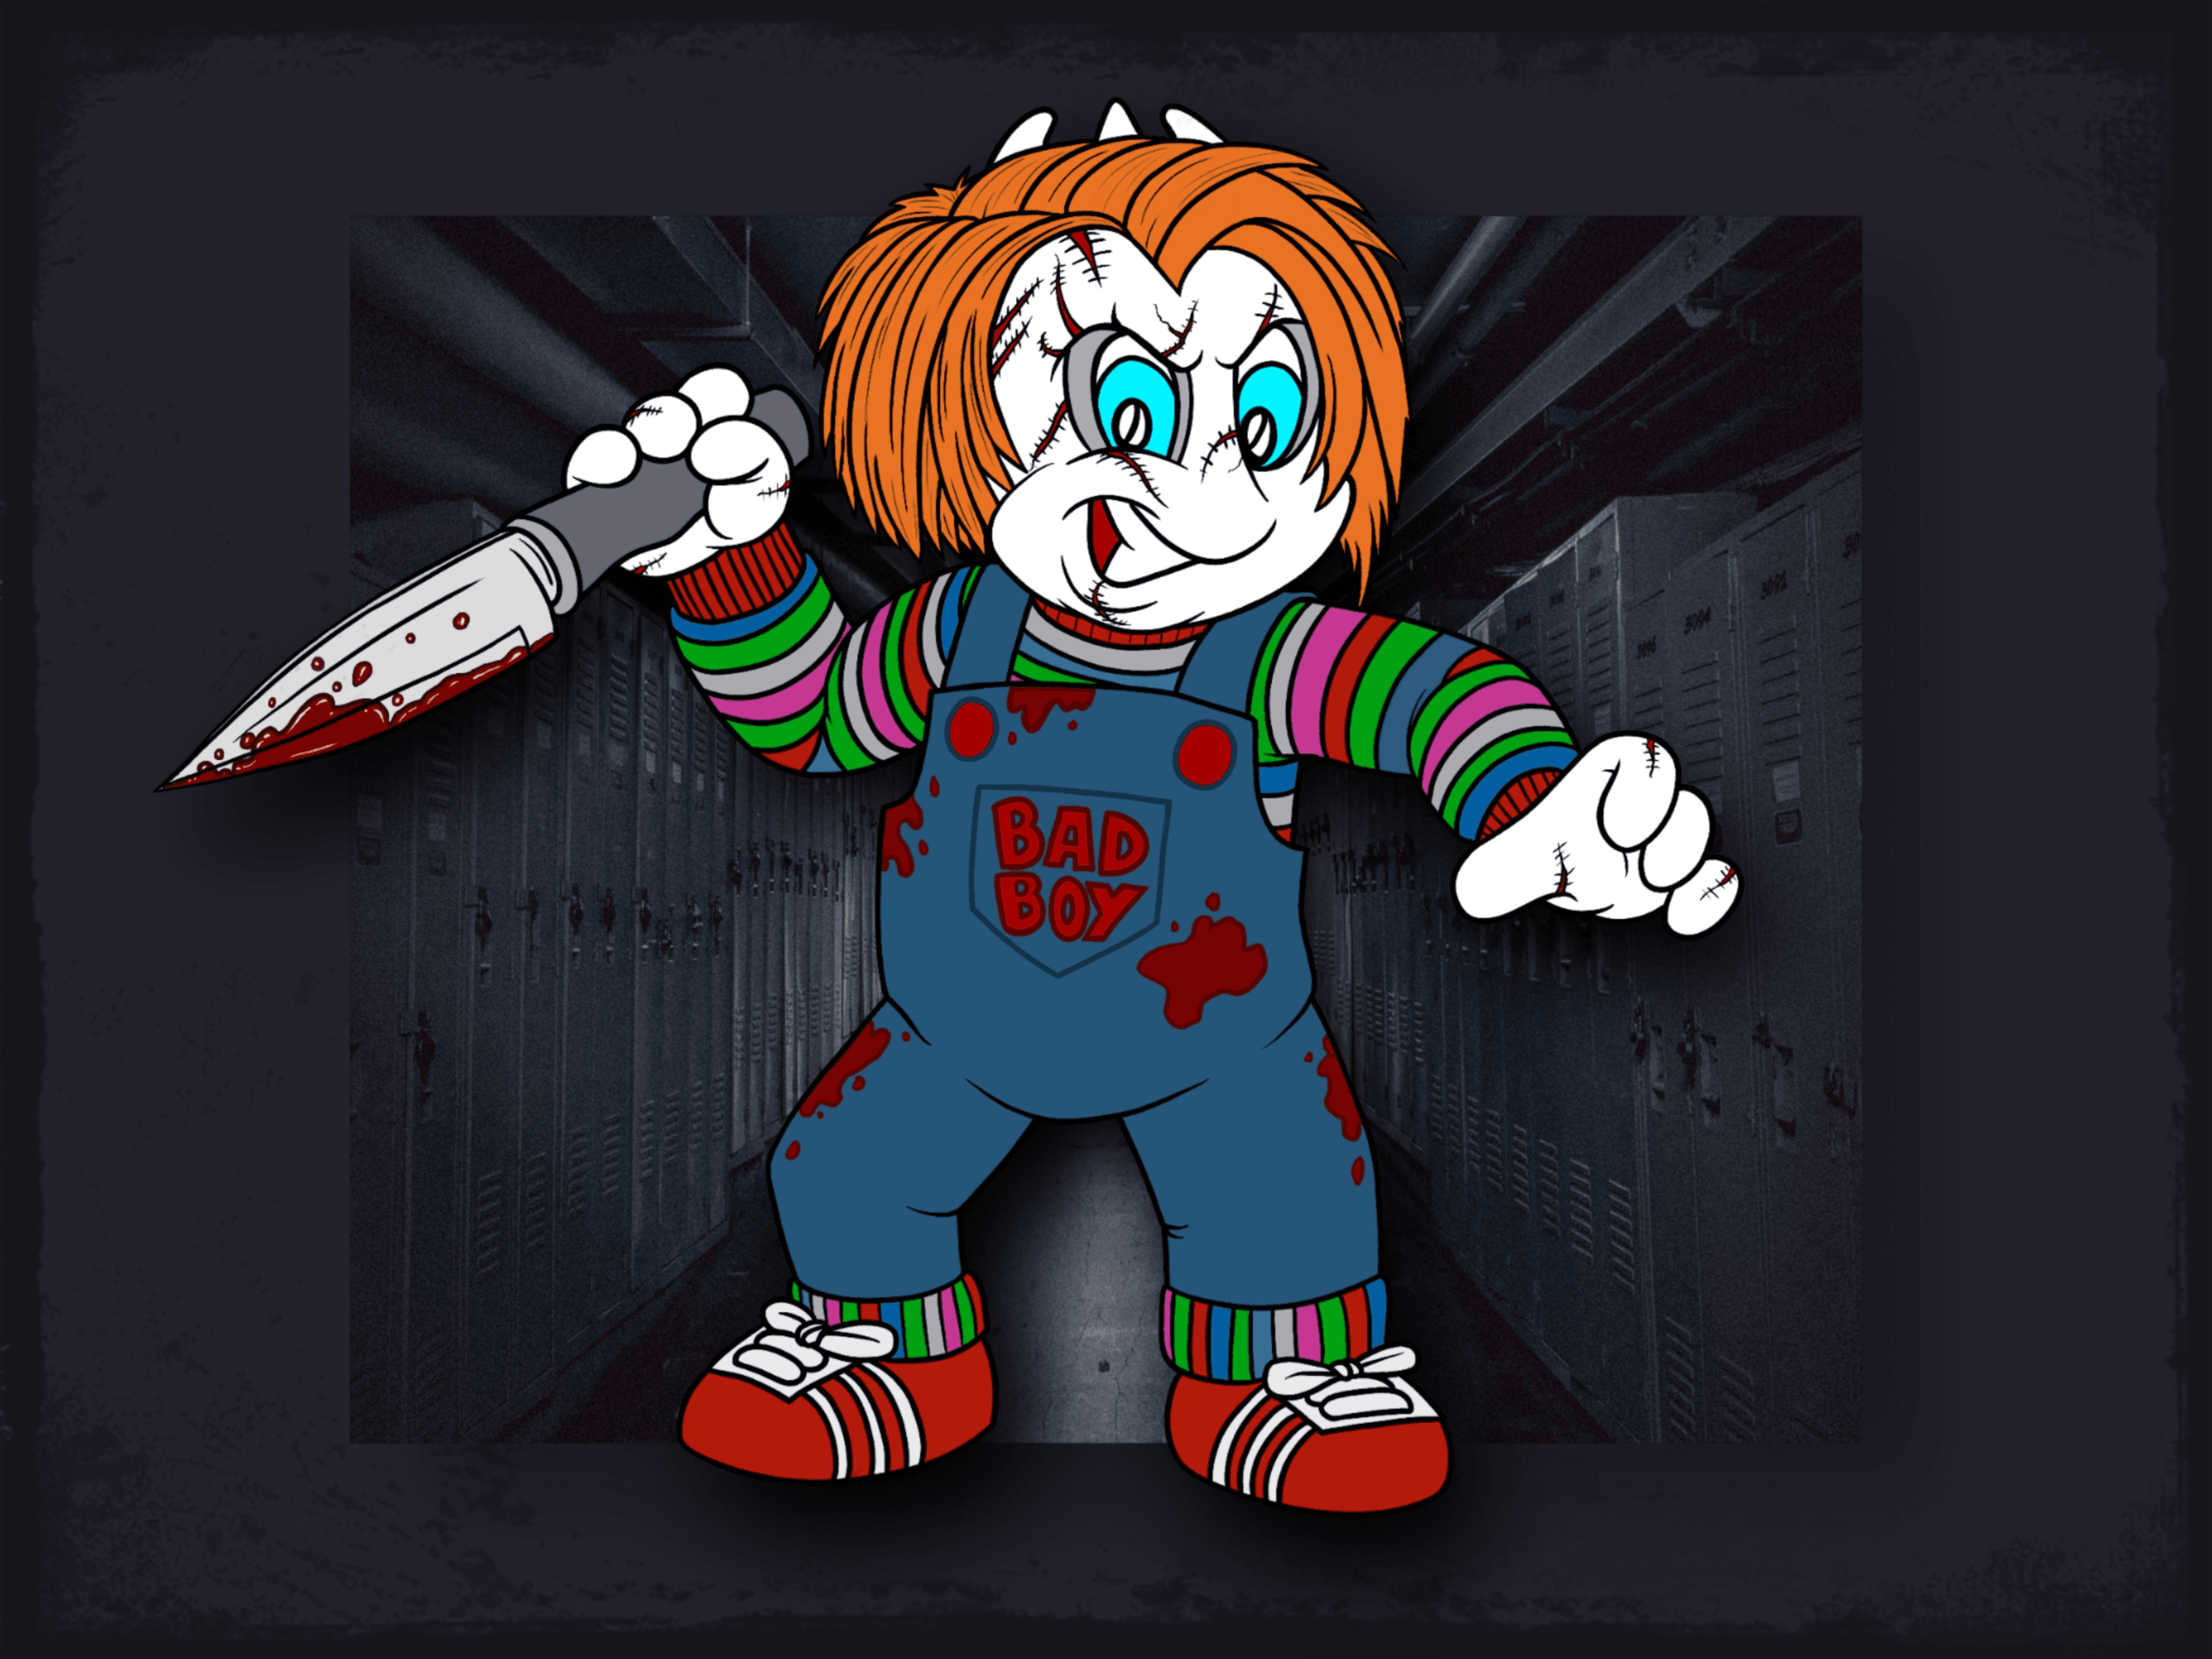 Here comes "Chucky Spork"!